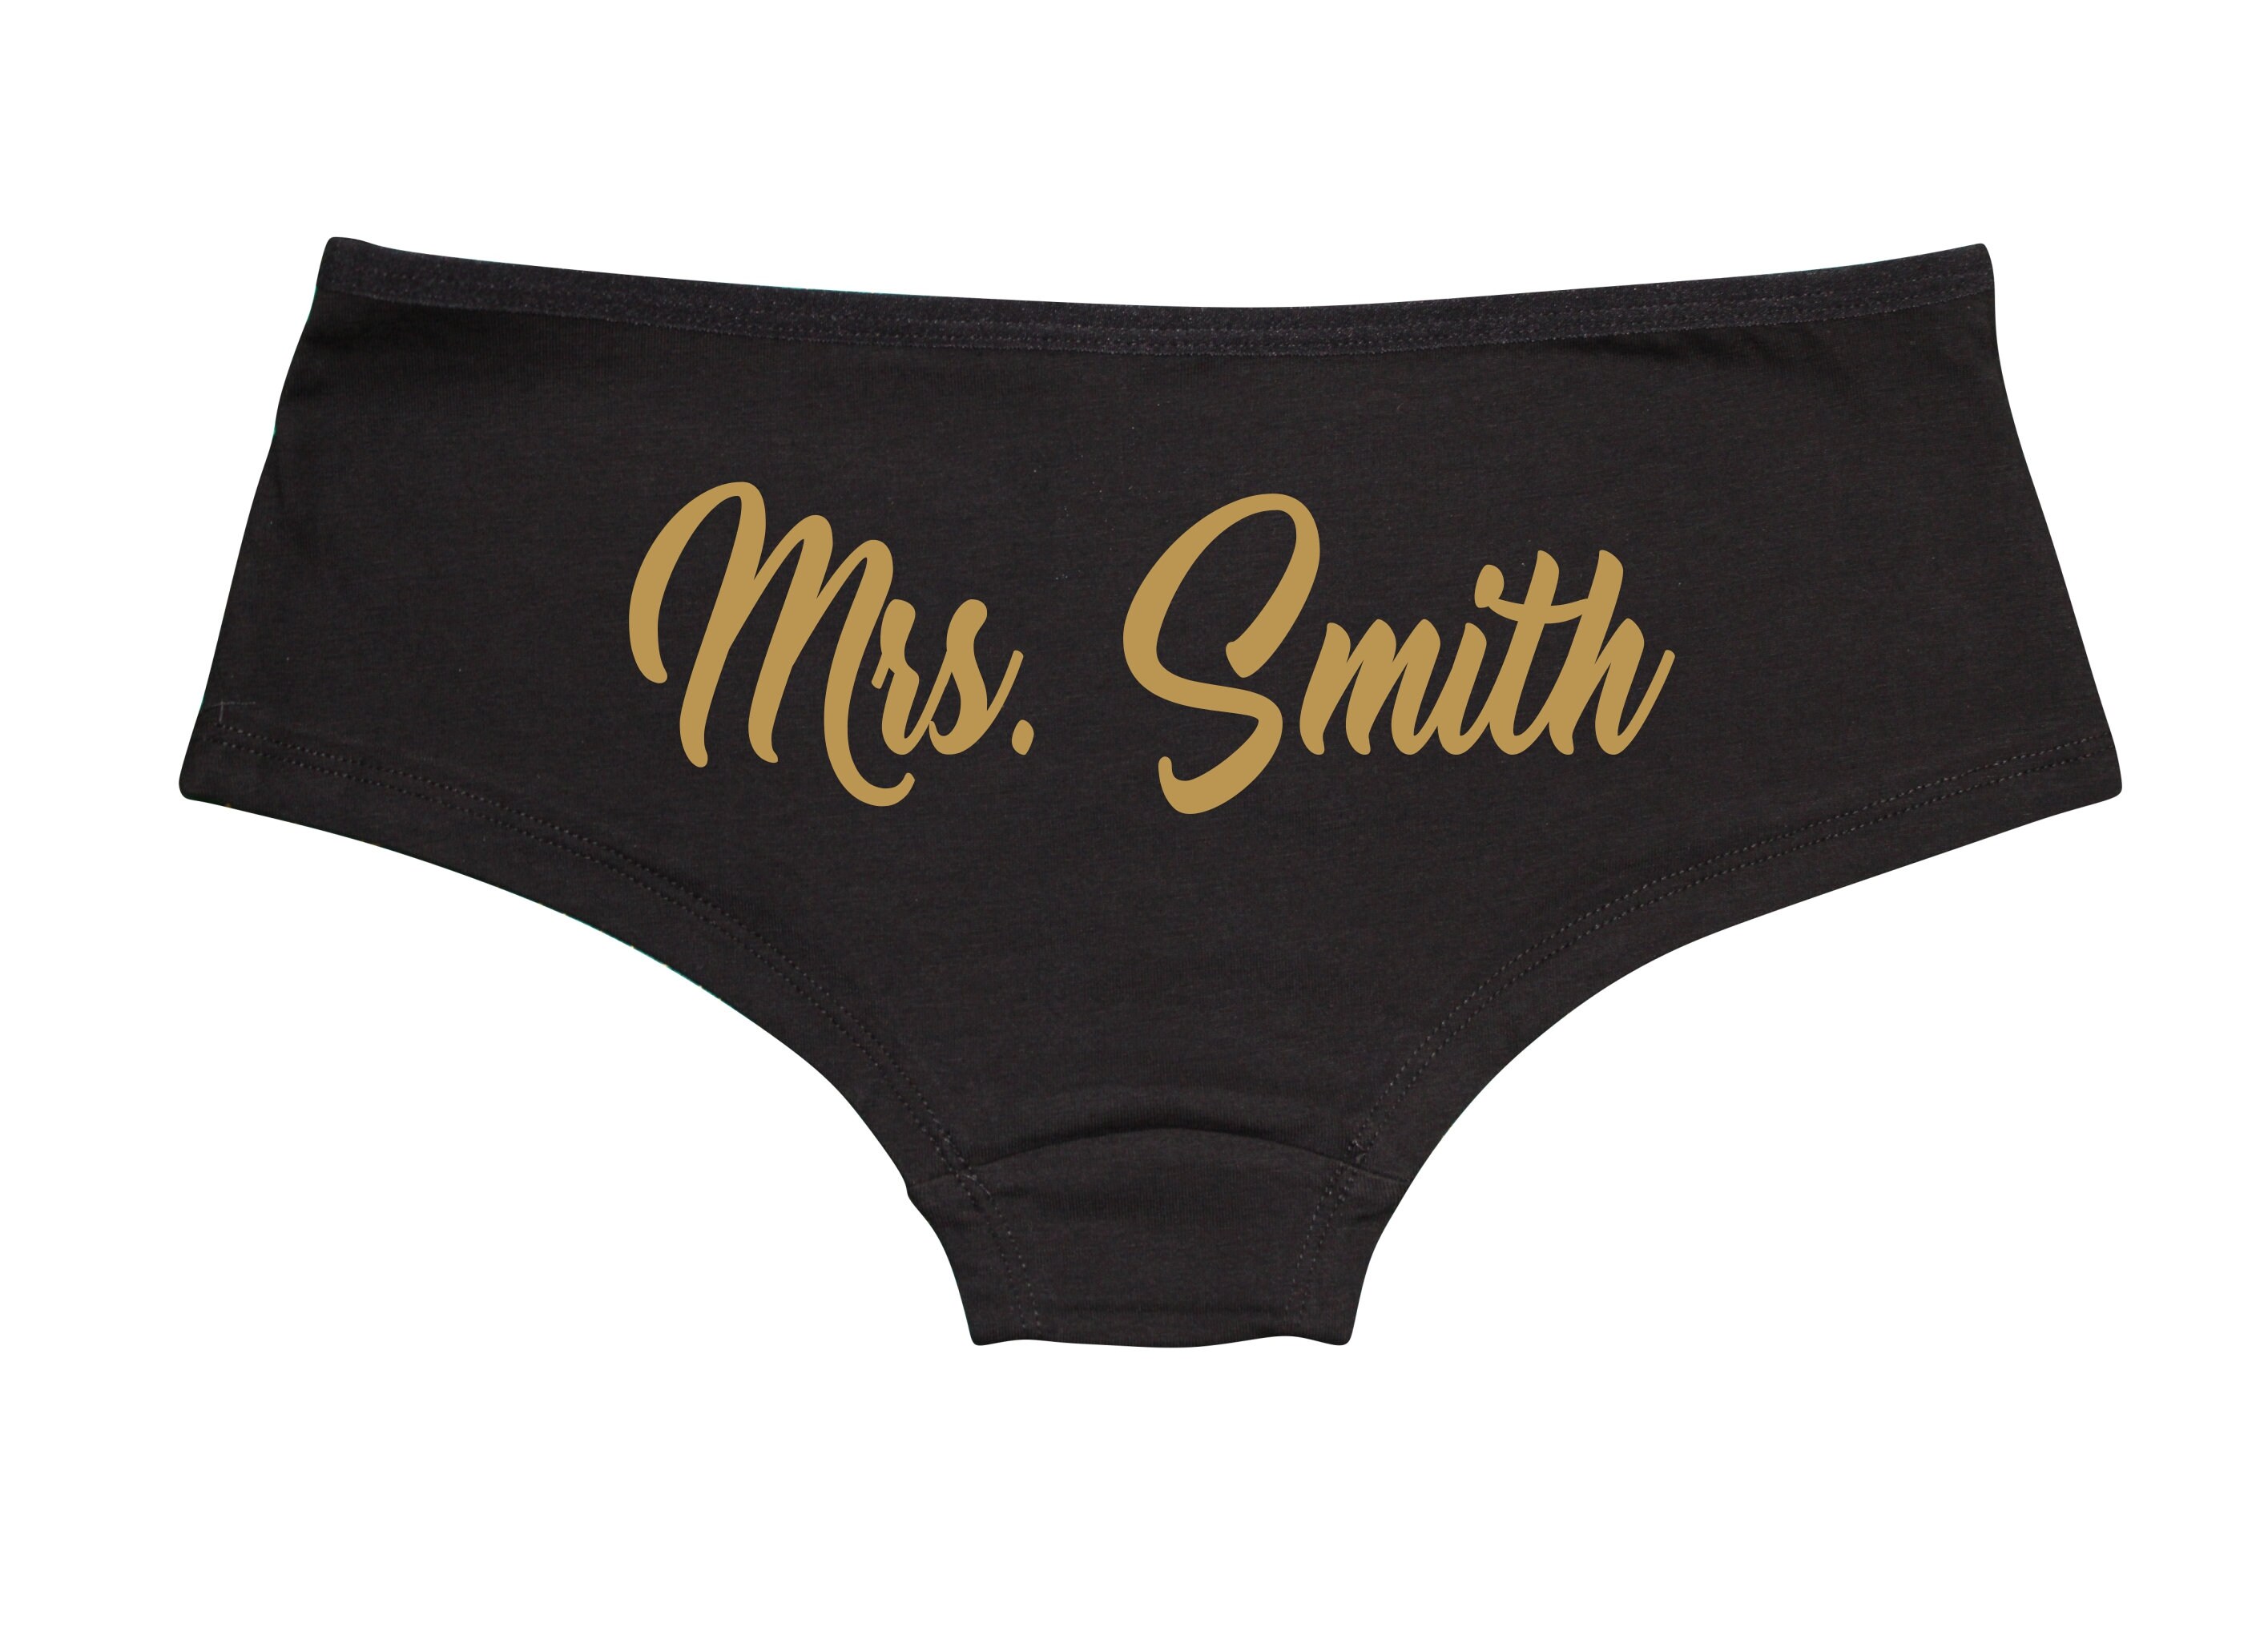 Mrs. last Name Black Boyshorts Underwear Shortie Panties Undies